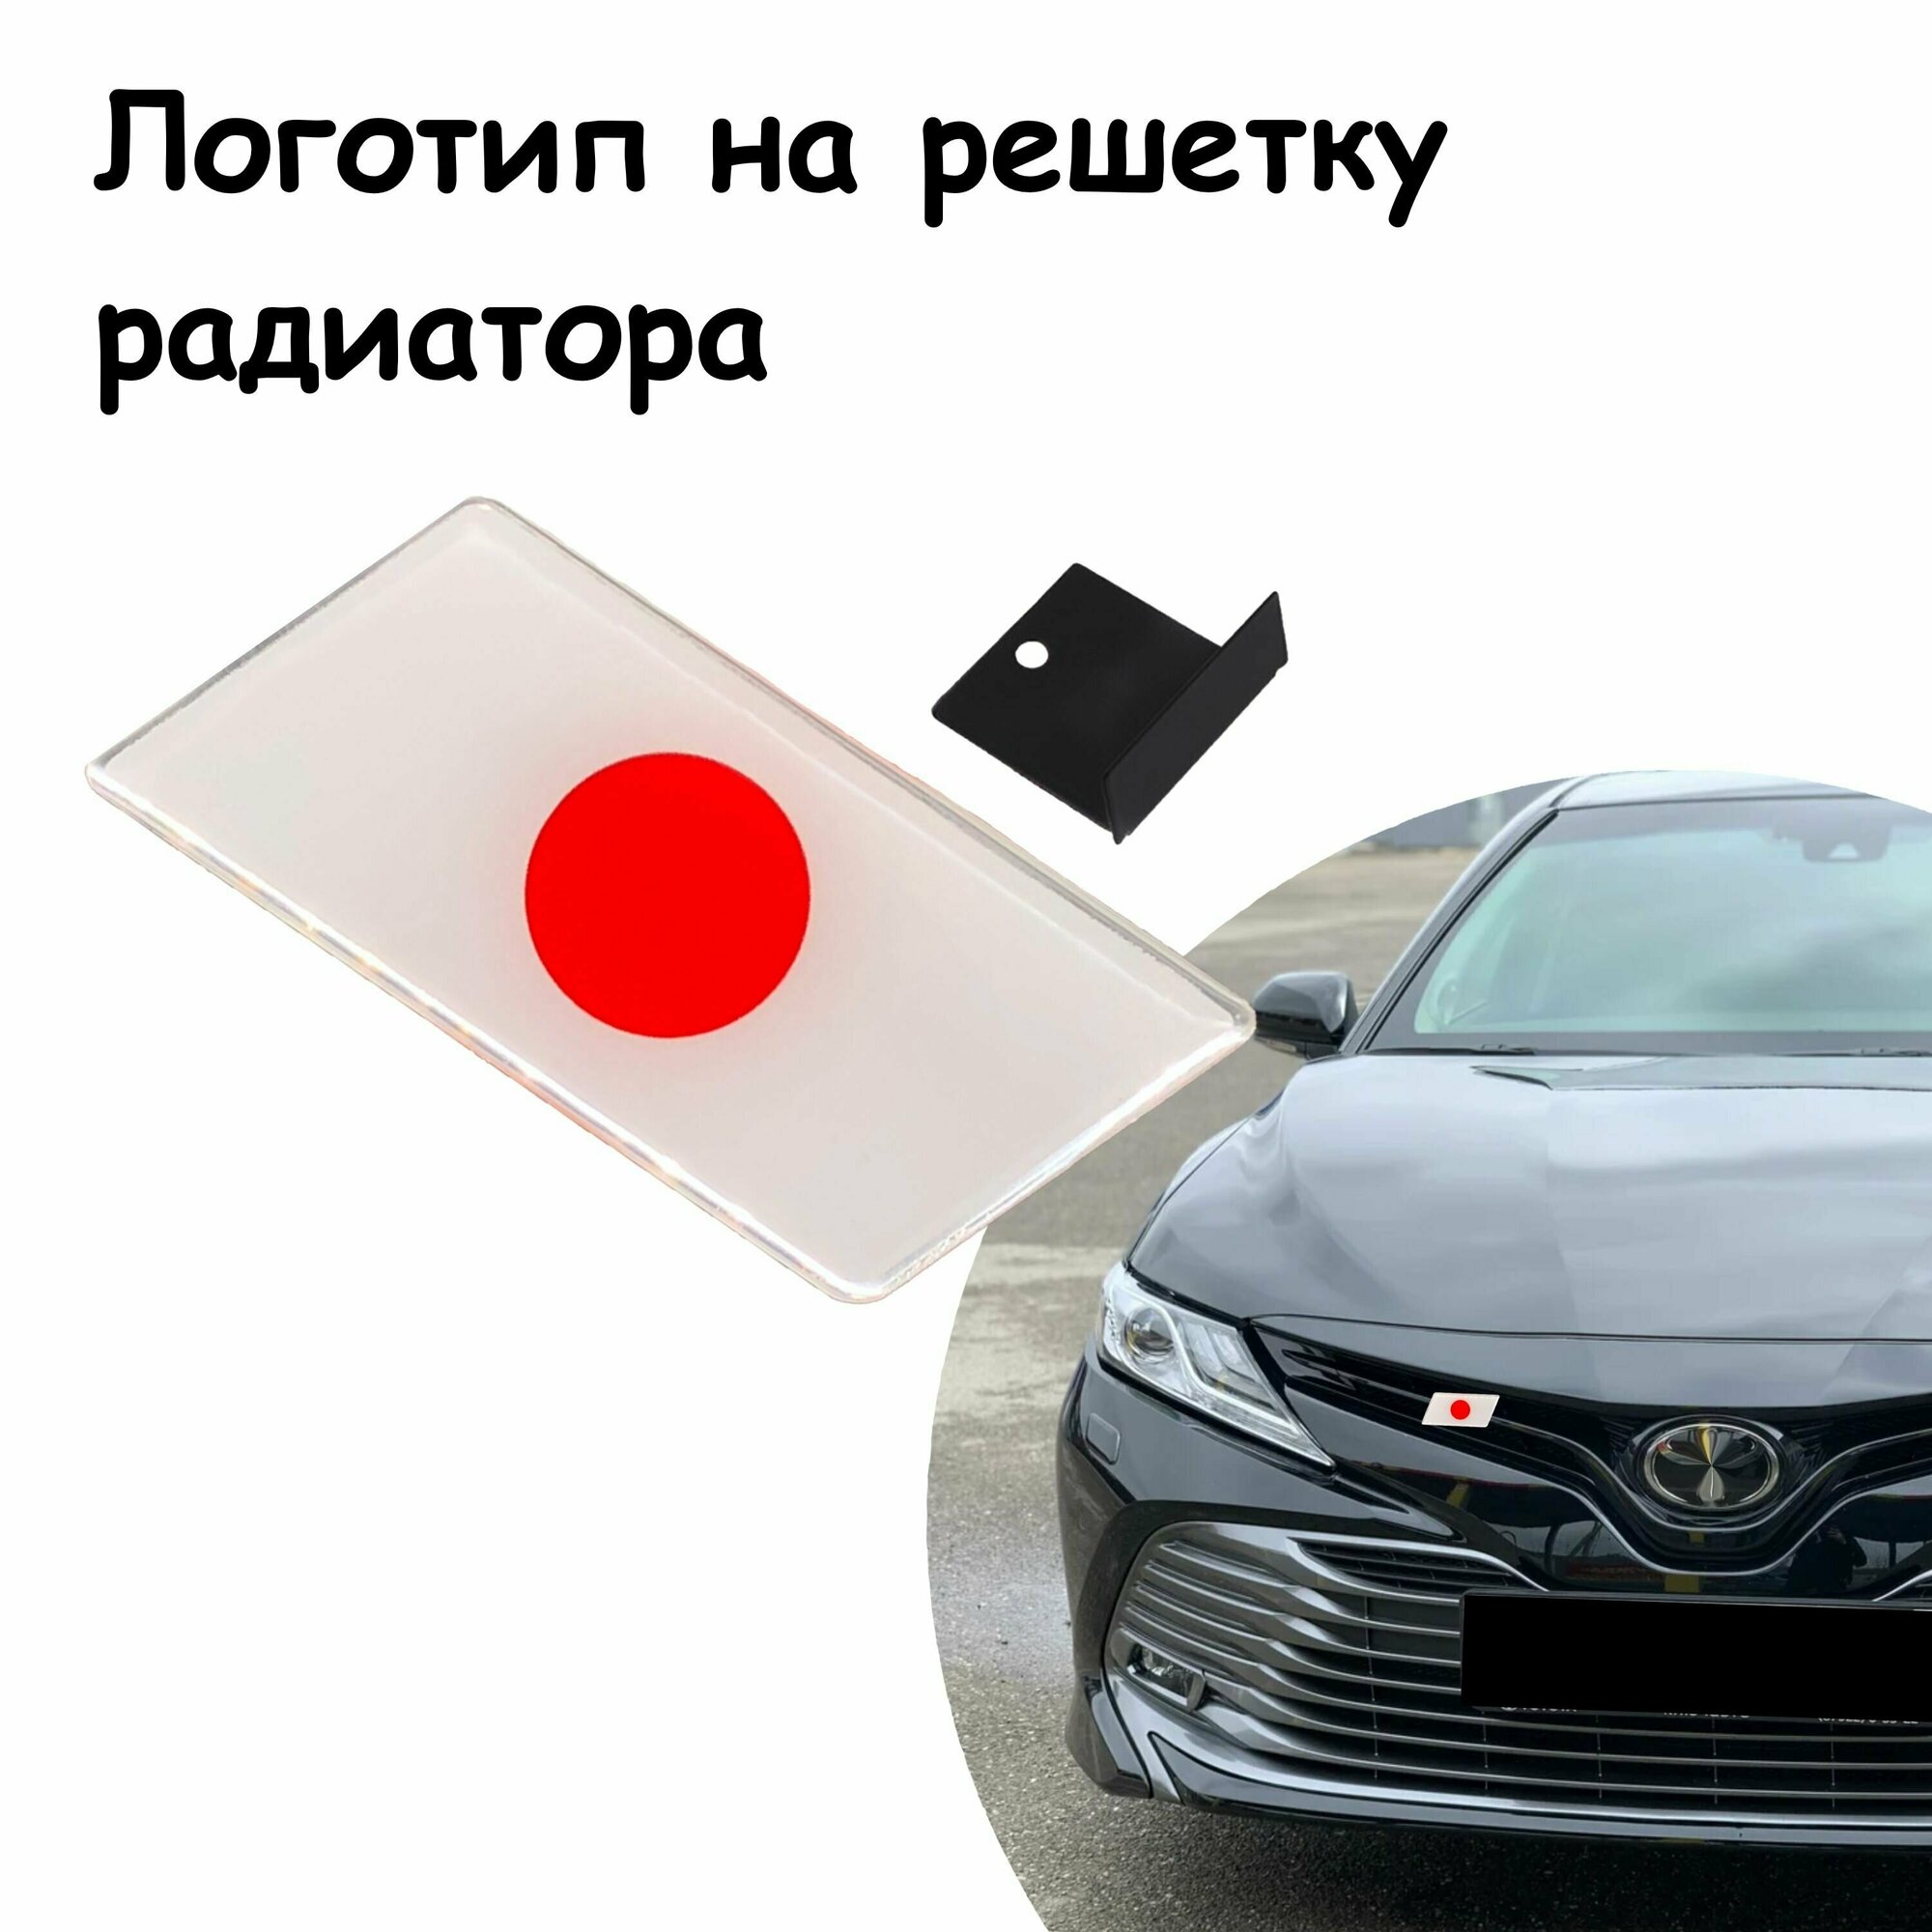 Шильдик на автомобиль, решетку радиатора, флаг Японии